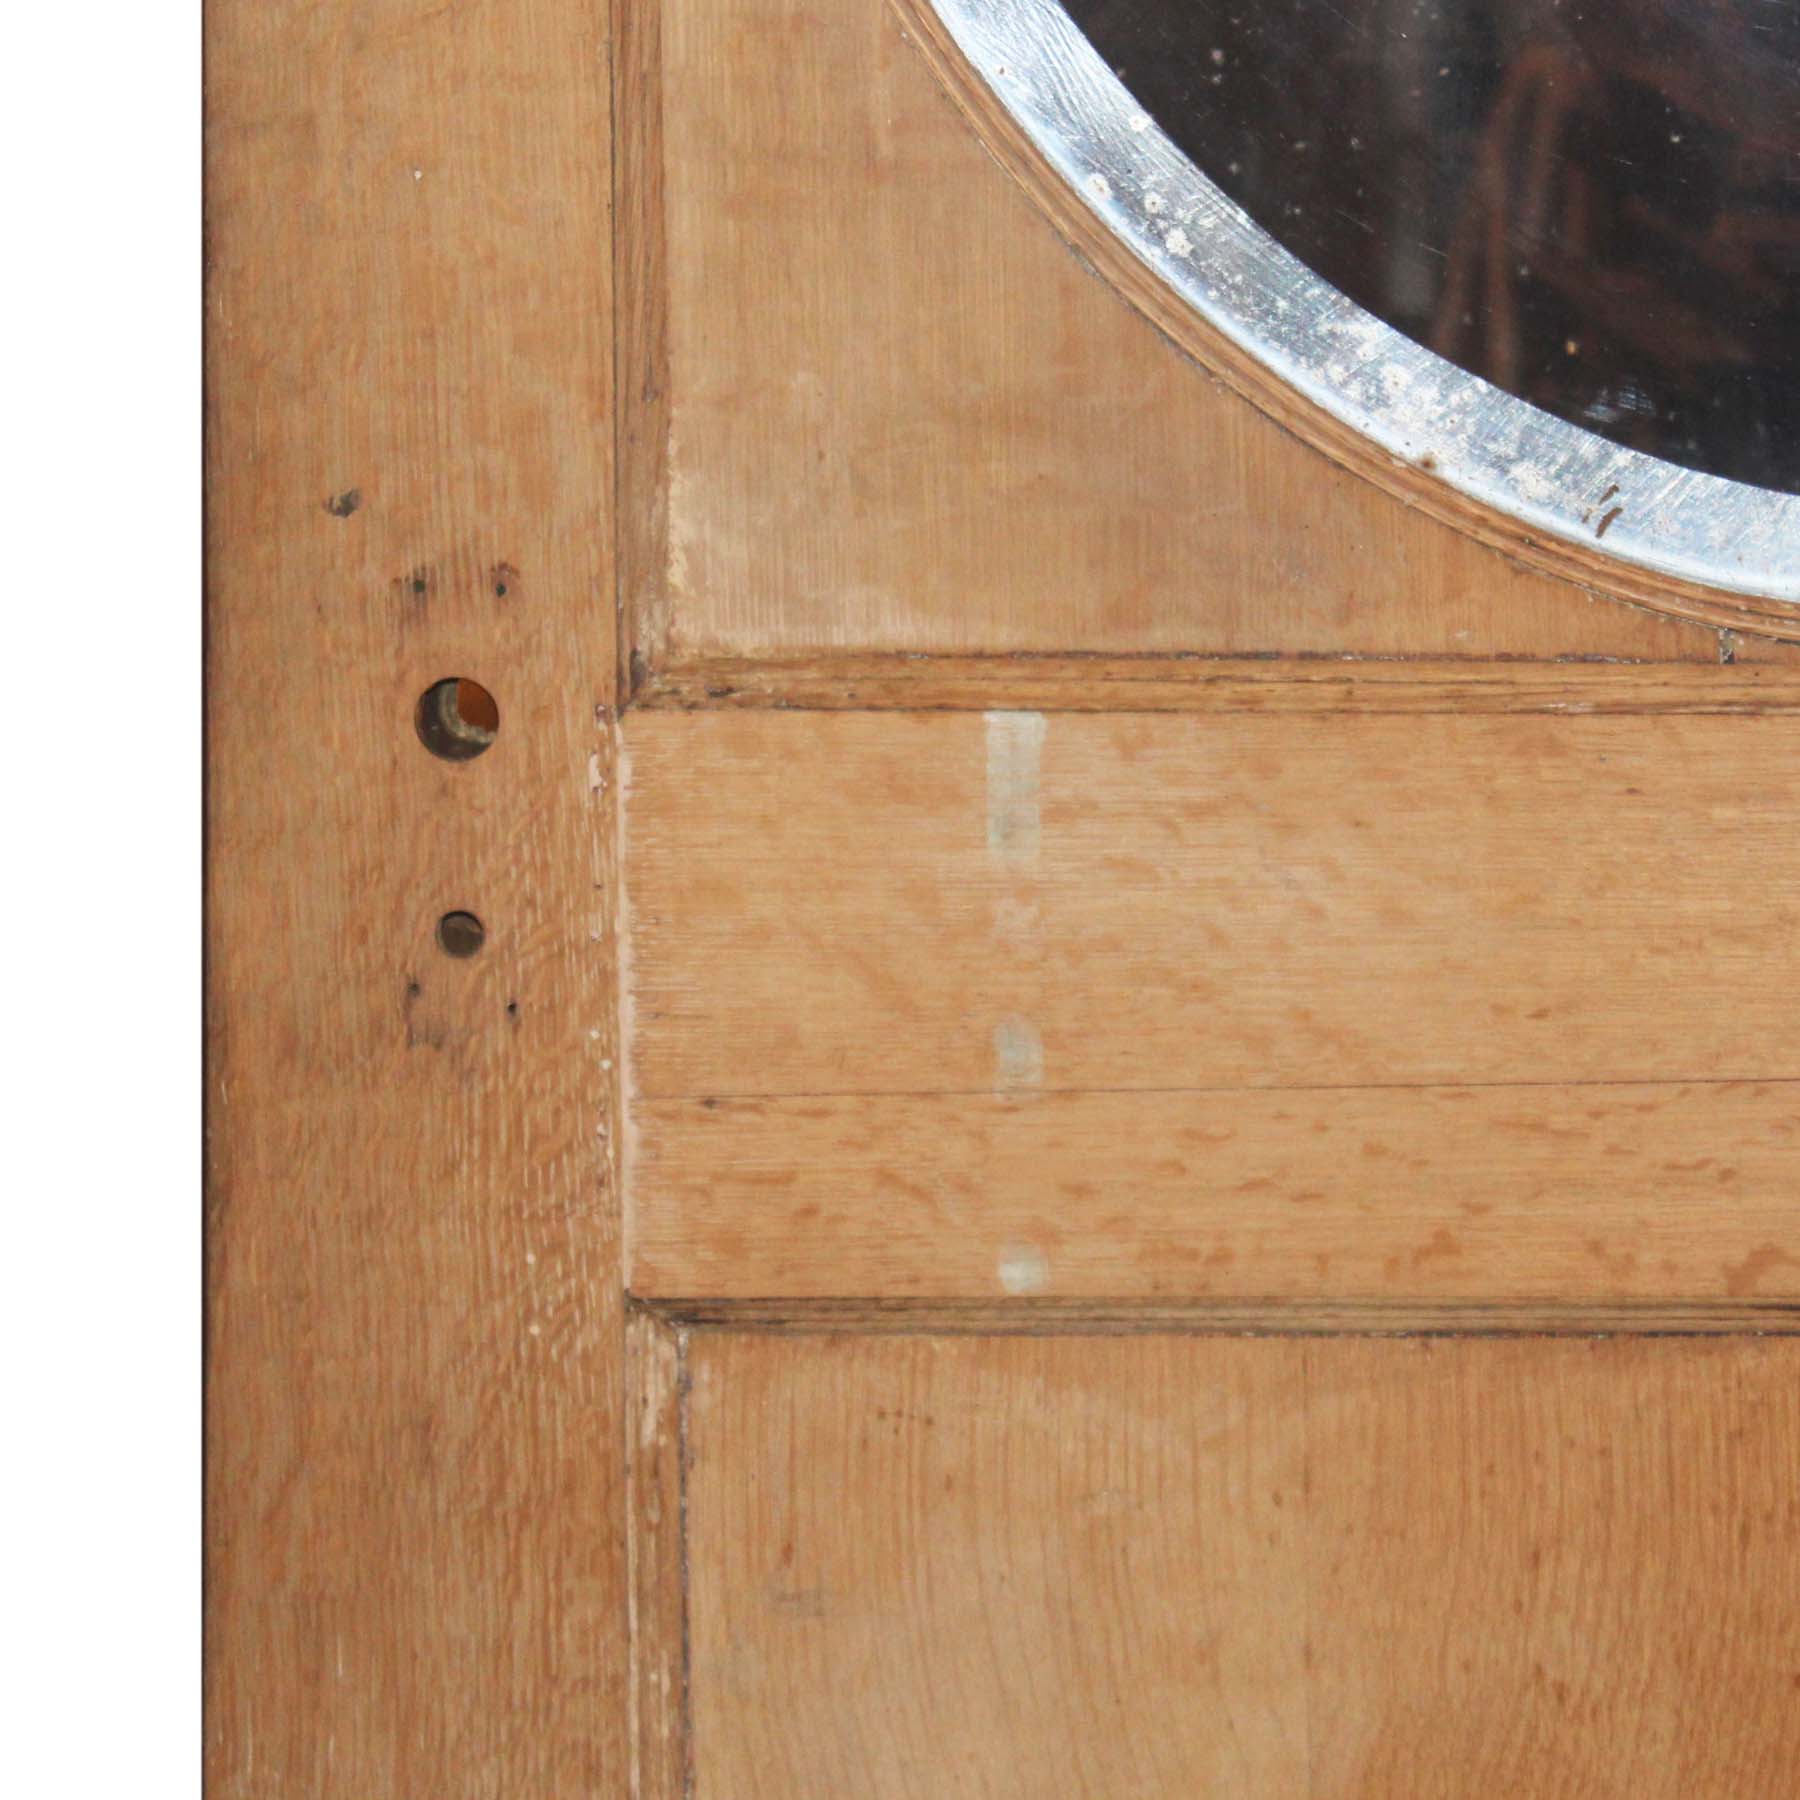 SOLD Reclaimed 42” Antique Neoclassical Door with Circular Window, c. 1910-67155